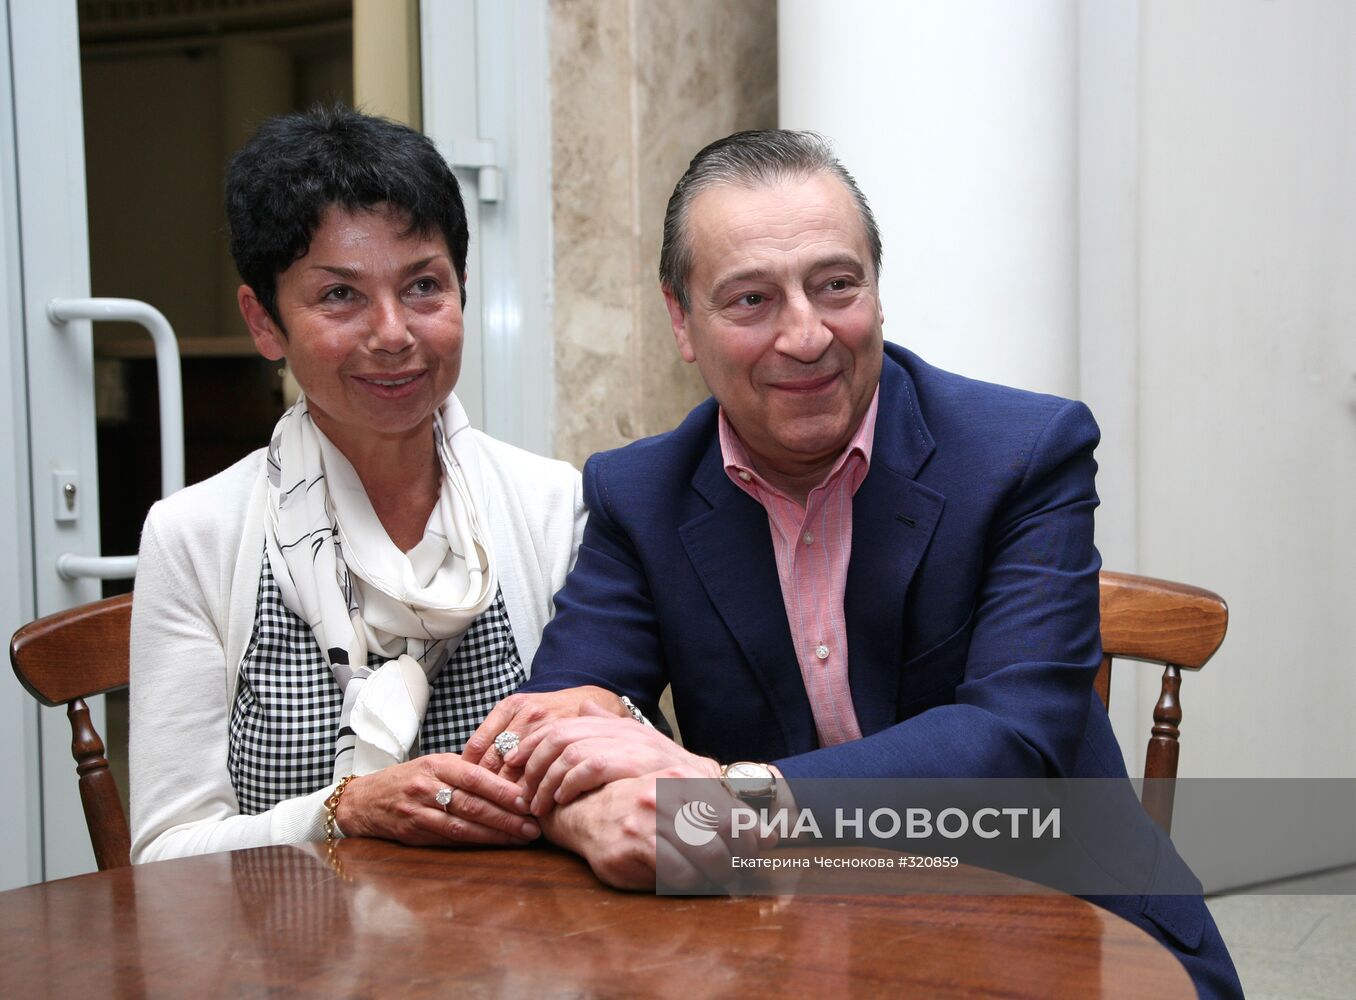 Геннадий Хазанов с супругой